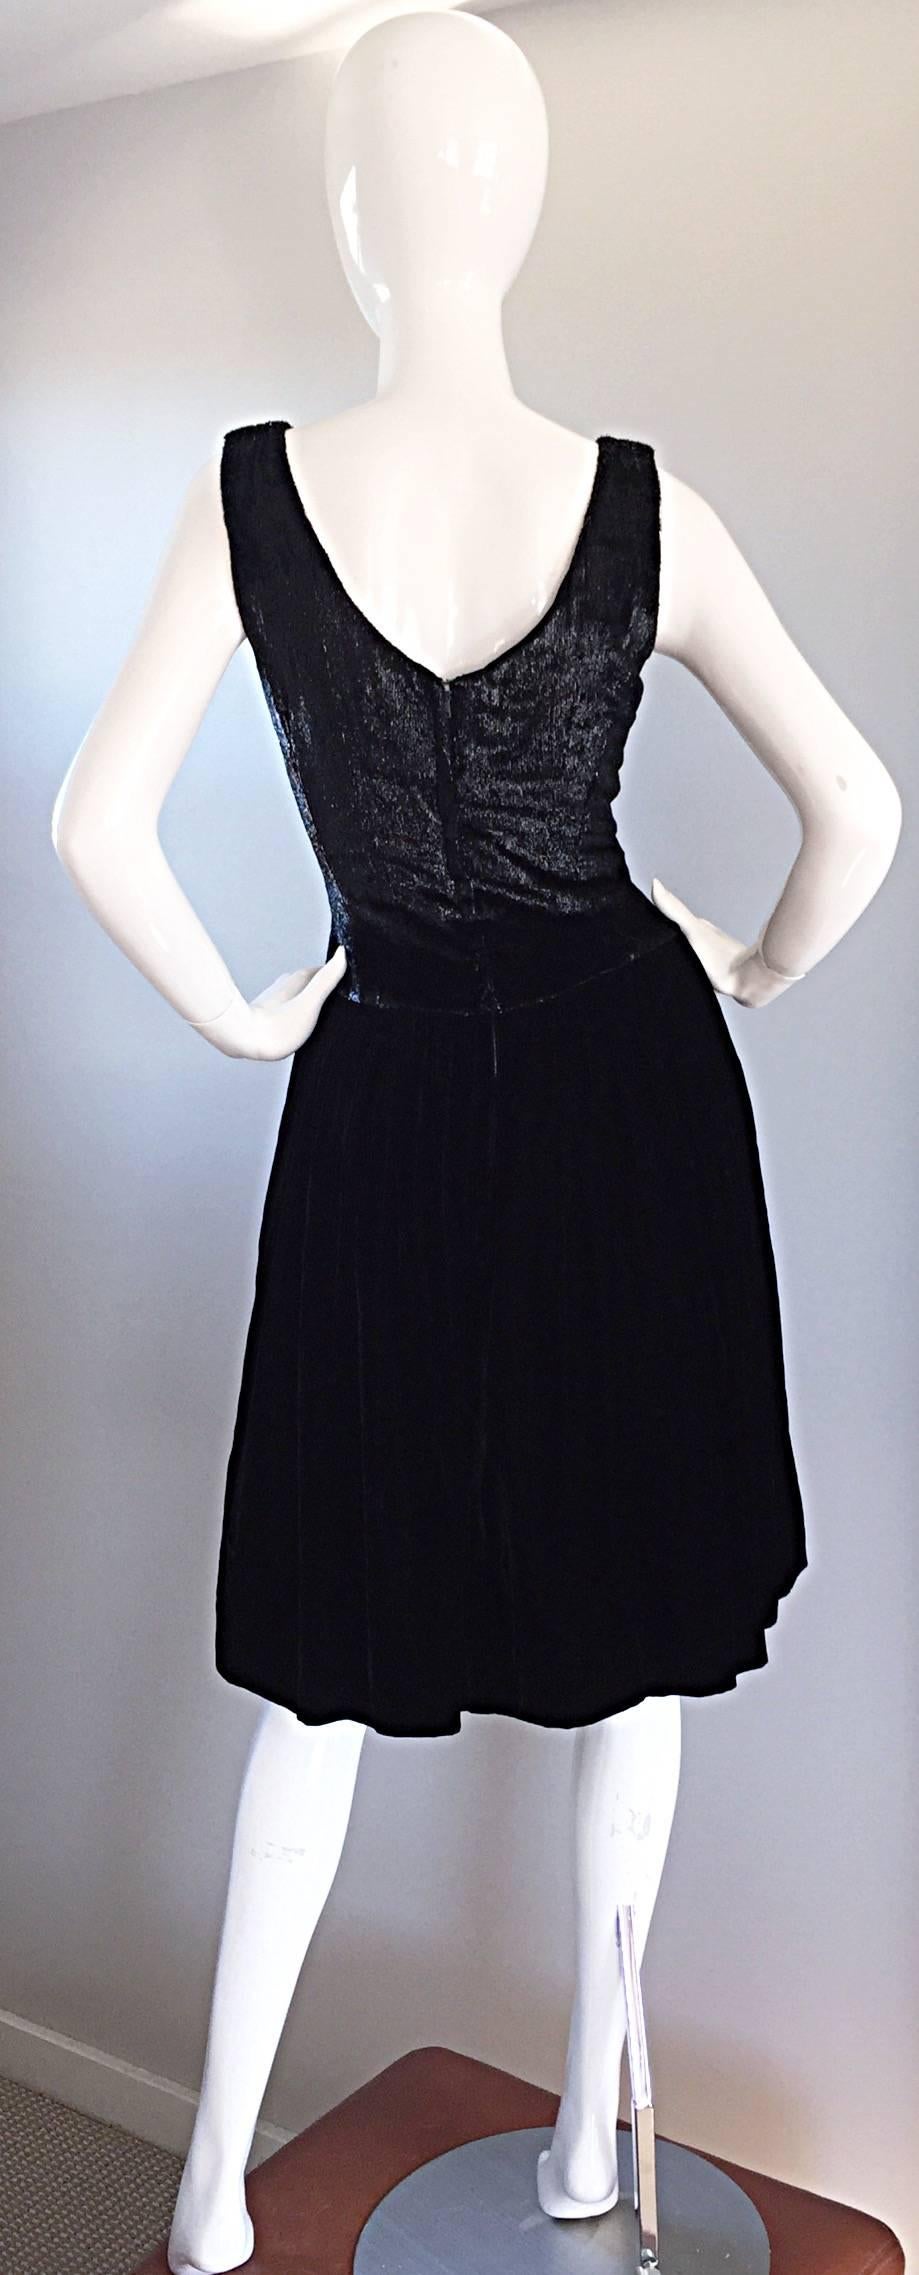  BRAND NEW (Never Worn) VINTAGE!!! 

Chic 1950s Suzy Perrette black silk velvet cocktail dress! Brand New deadstock vintage dress! Skirt features soft black silk velvet, with built in crinoline for a stunning ' Rockabilly ' full skirt! Bodice is